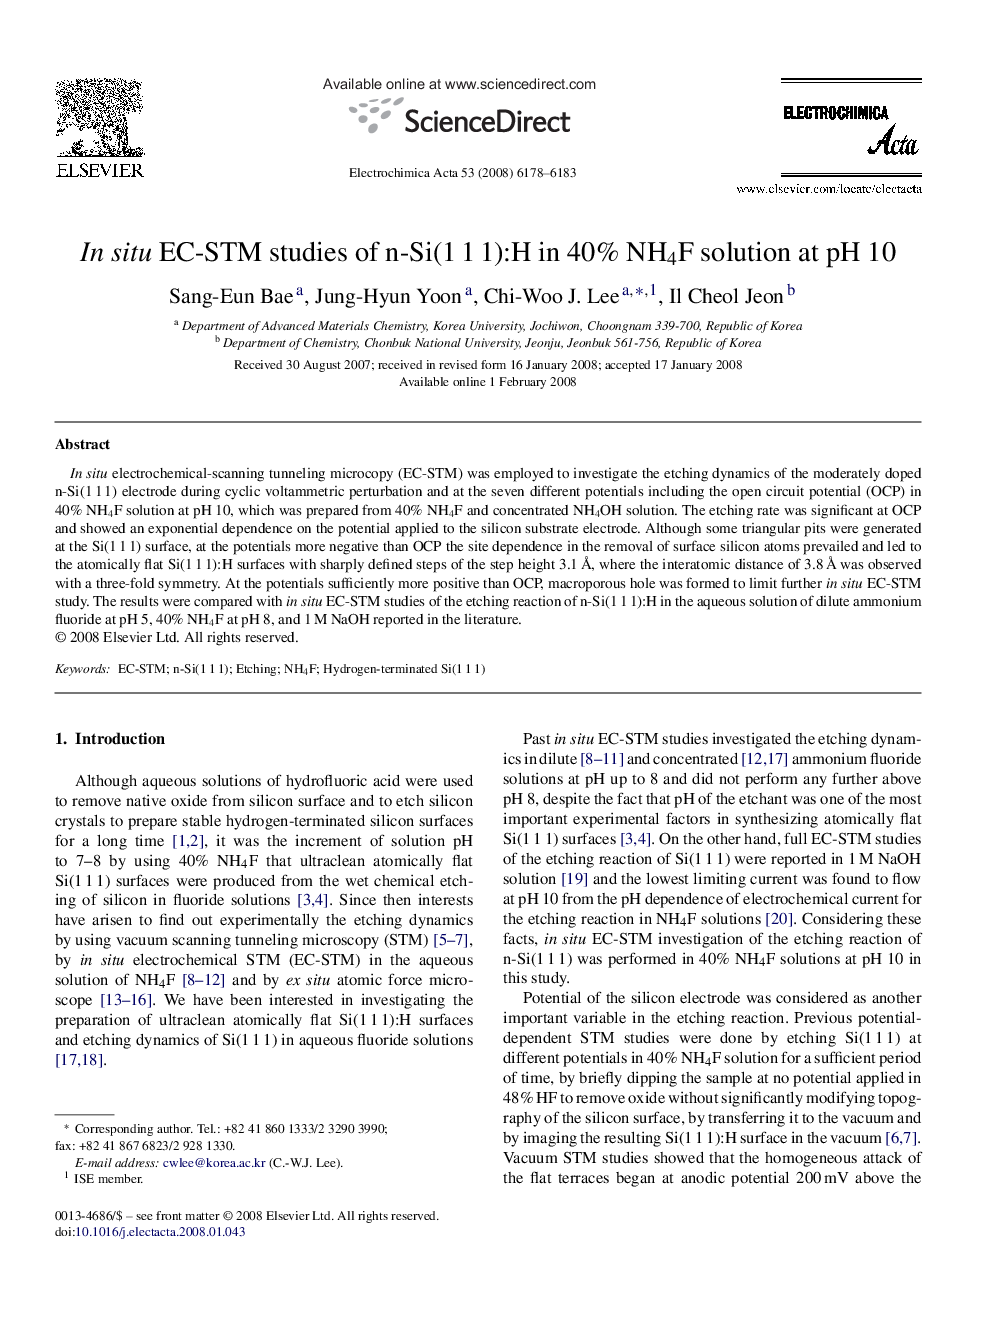 In situ EC-STM studies of n-Si(1 1 1):H in 40% NH4F solution at pH 10